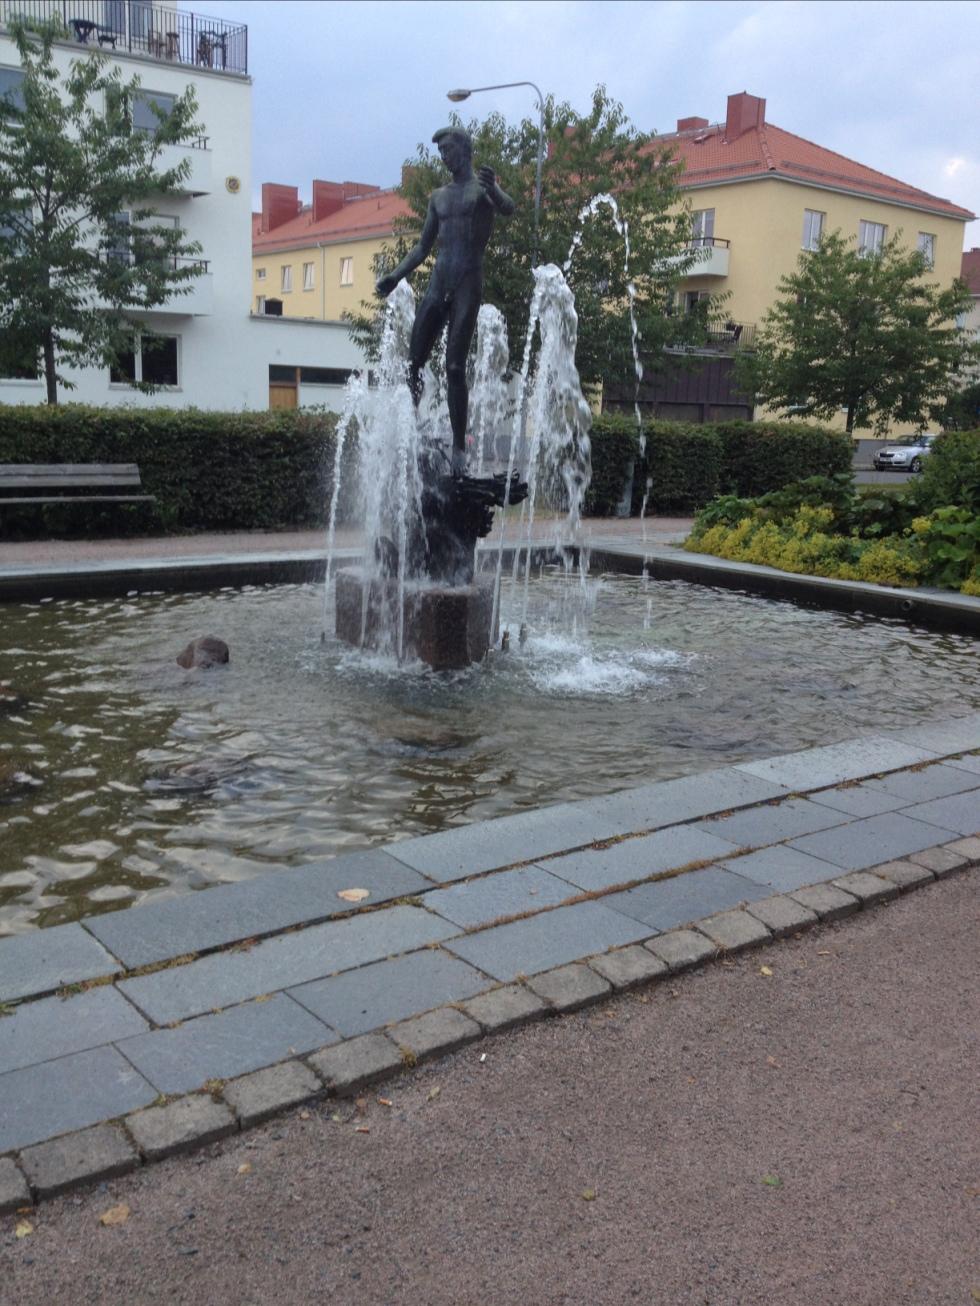 Renaste och trevligaste staden Jönköping.